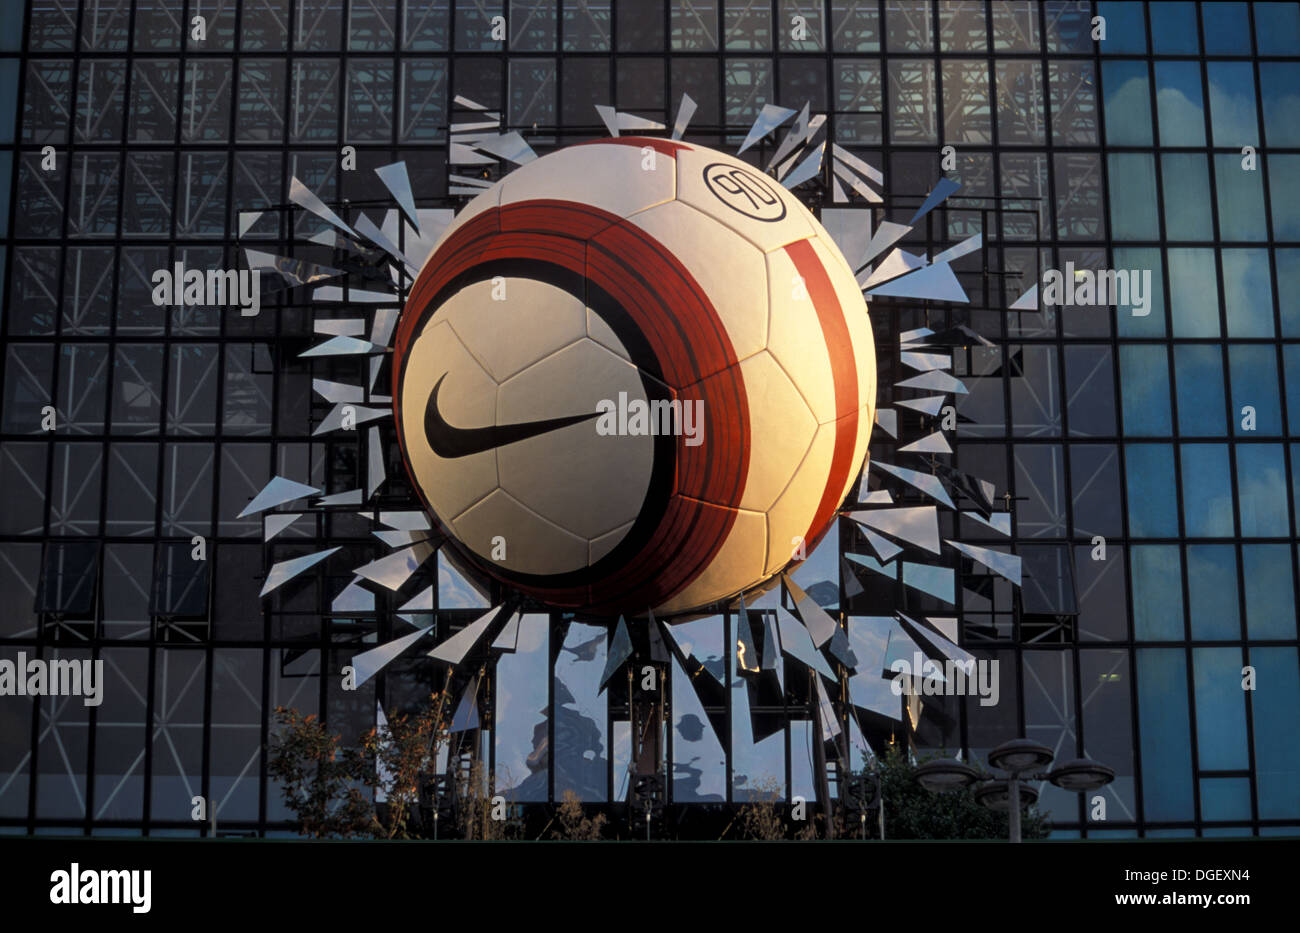 Anuncio de Nike de un balón de fútbol gigante simulando rompiendo los cristales de un edificio La Defense de París Fotografía de stock Alamy